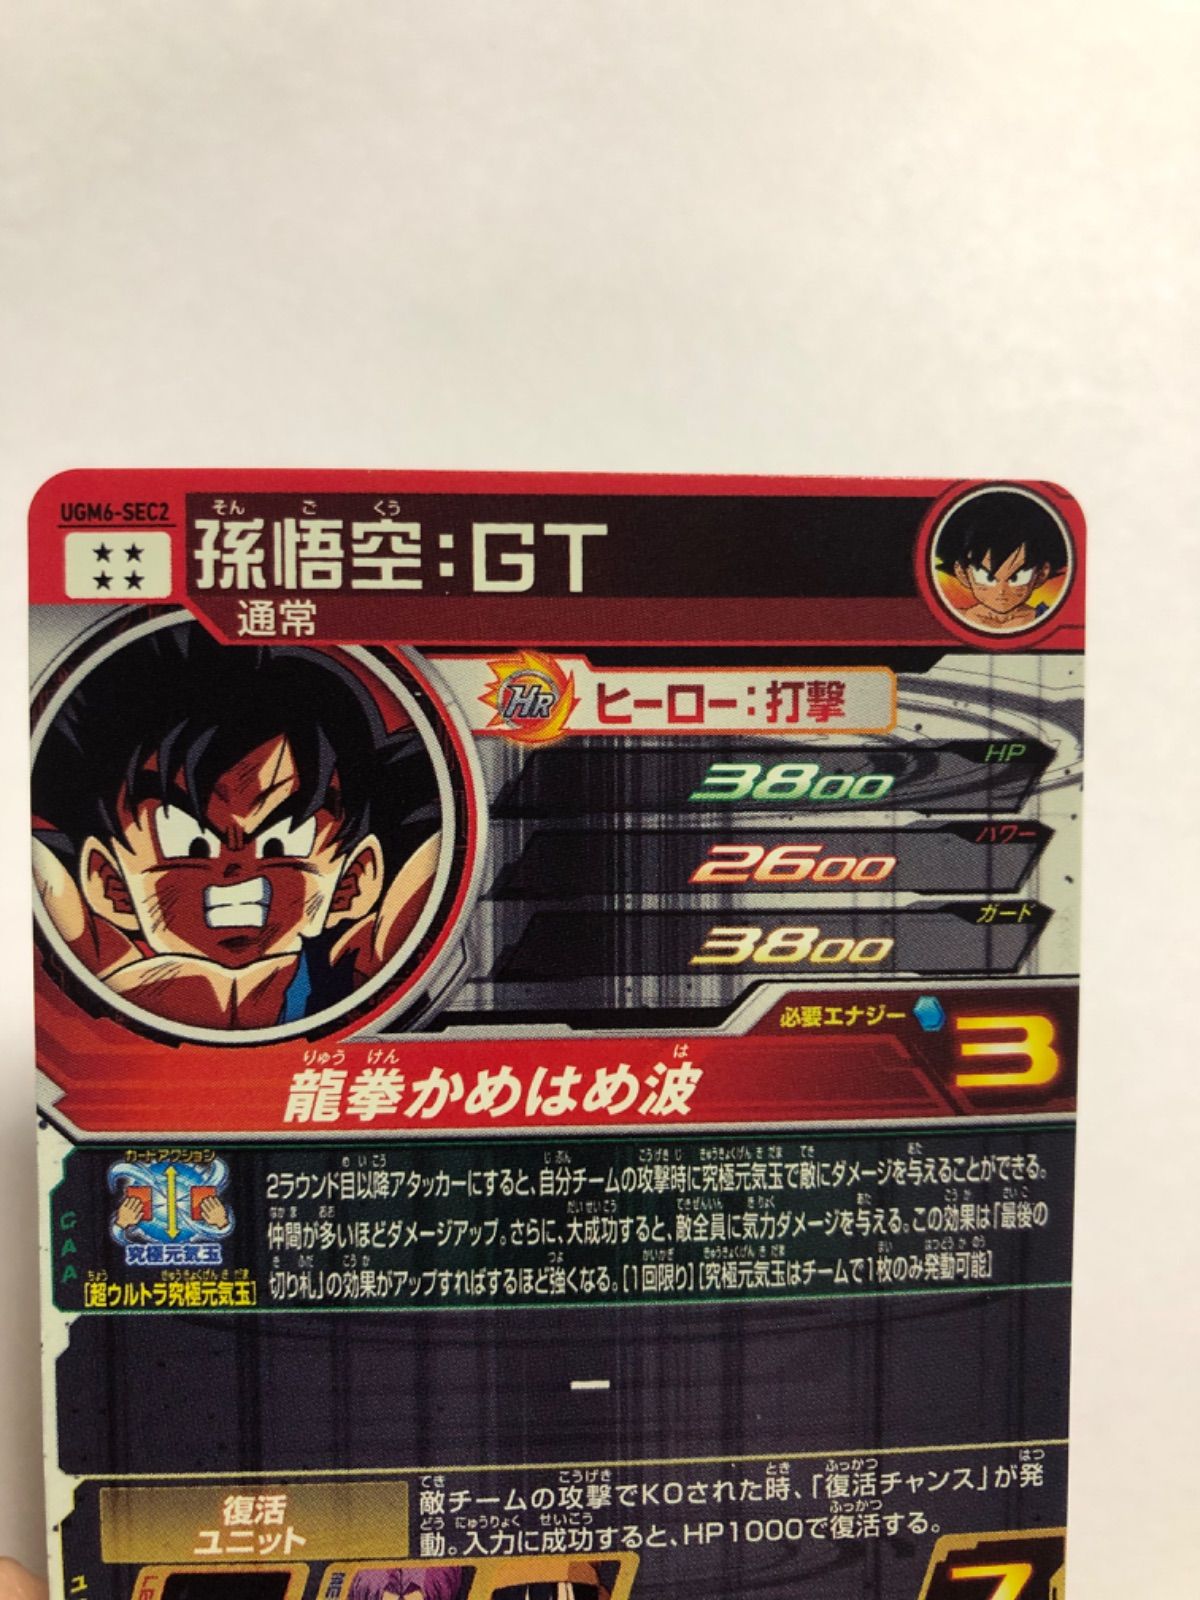 スーパードラゴンボールヒーローズ UGM6-SEC2 孫悟空:GT - メルカリ